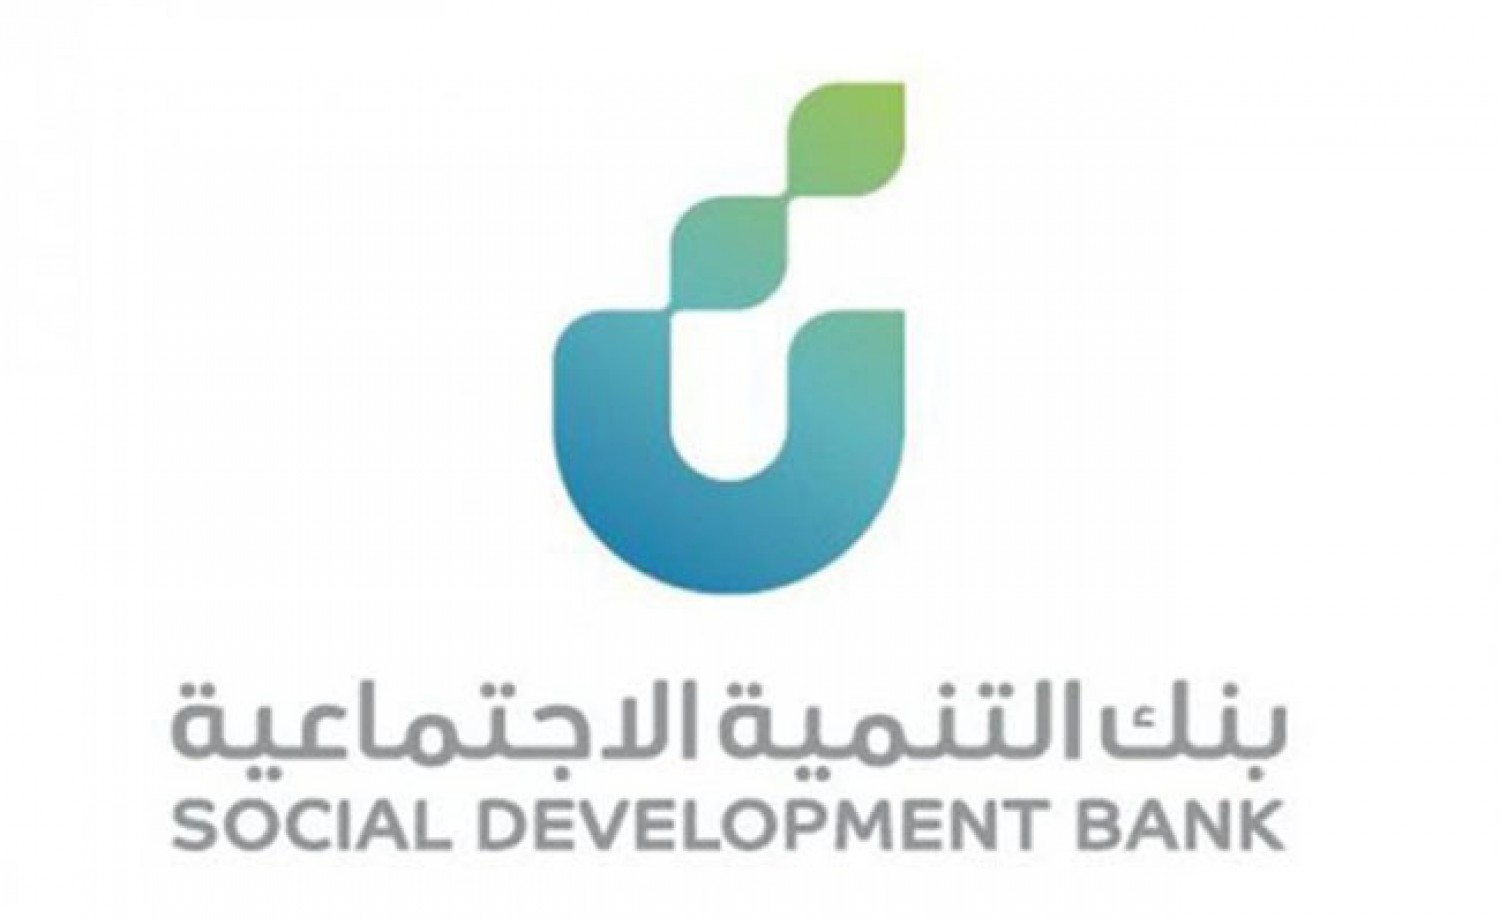 شروط قرض بنك التنمية الاجتماعية